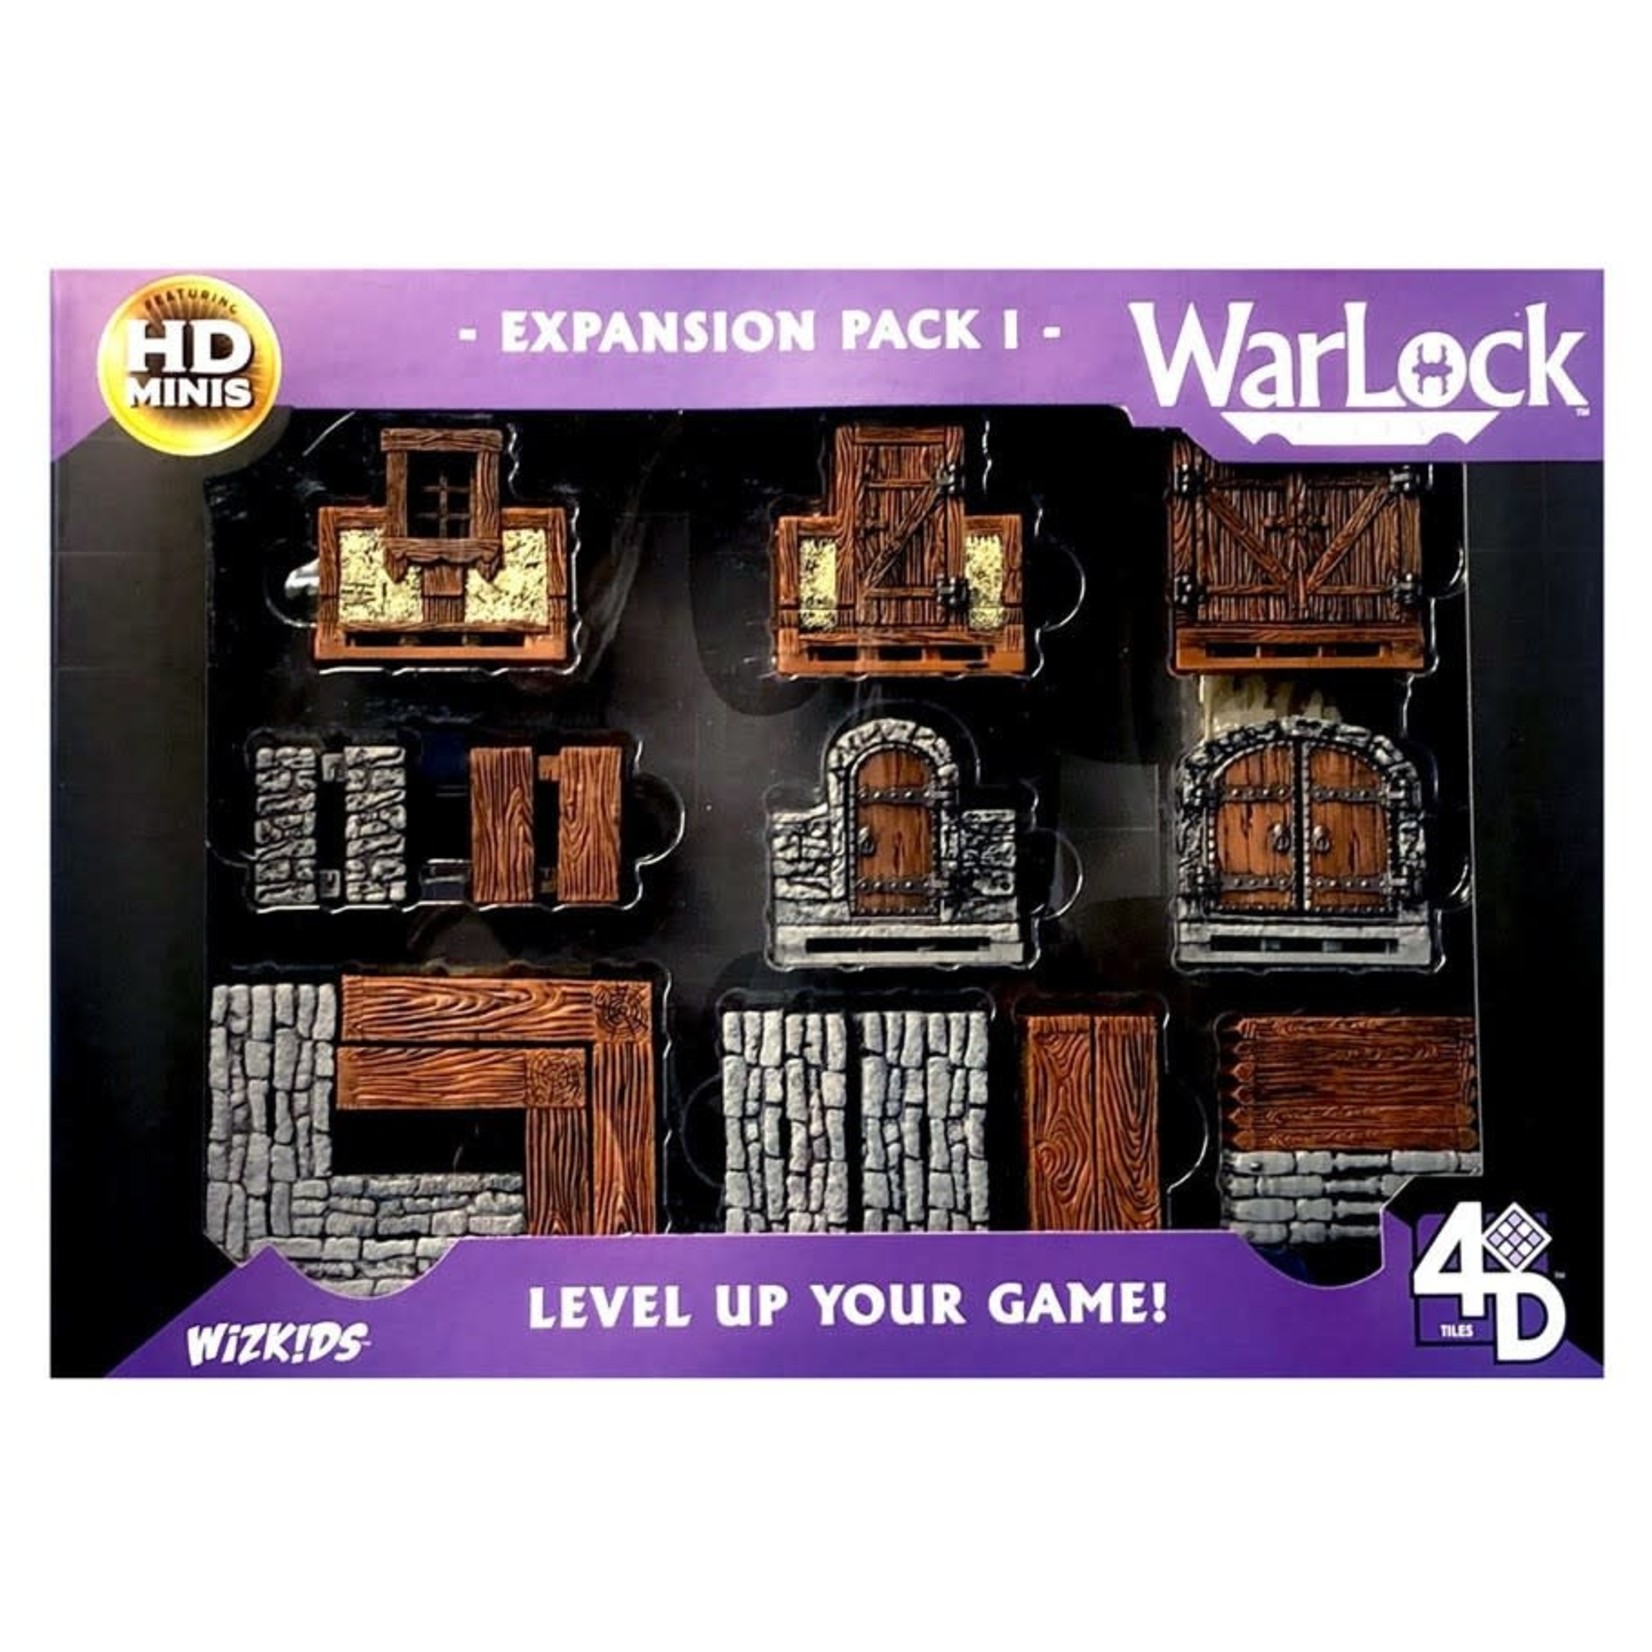 WizKids Warlock Tiles: Expansion Pack I